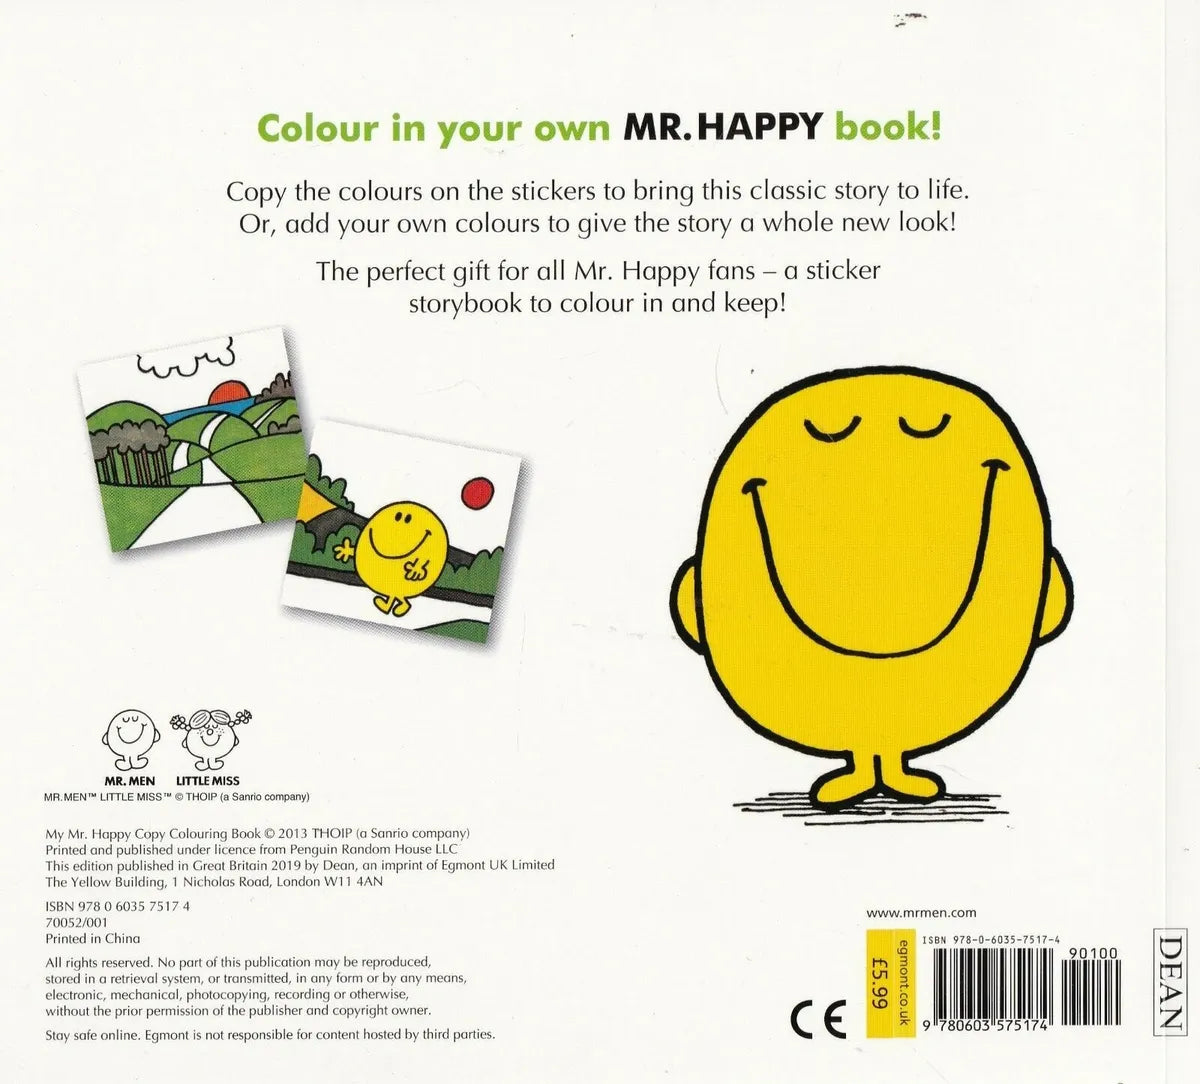 Mr. Men - My Mr. Happy Copy Colouring Book